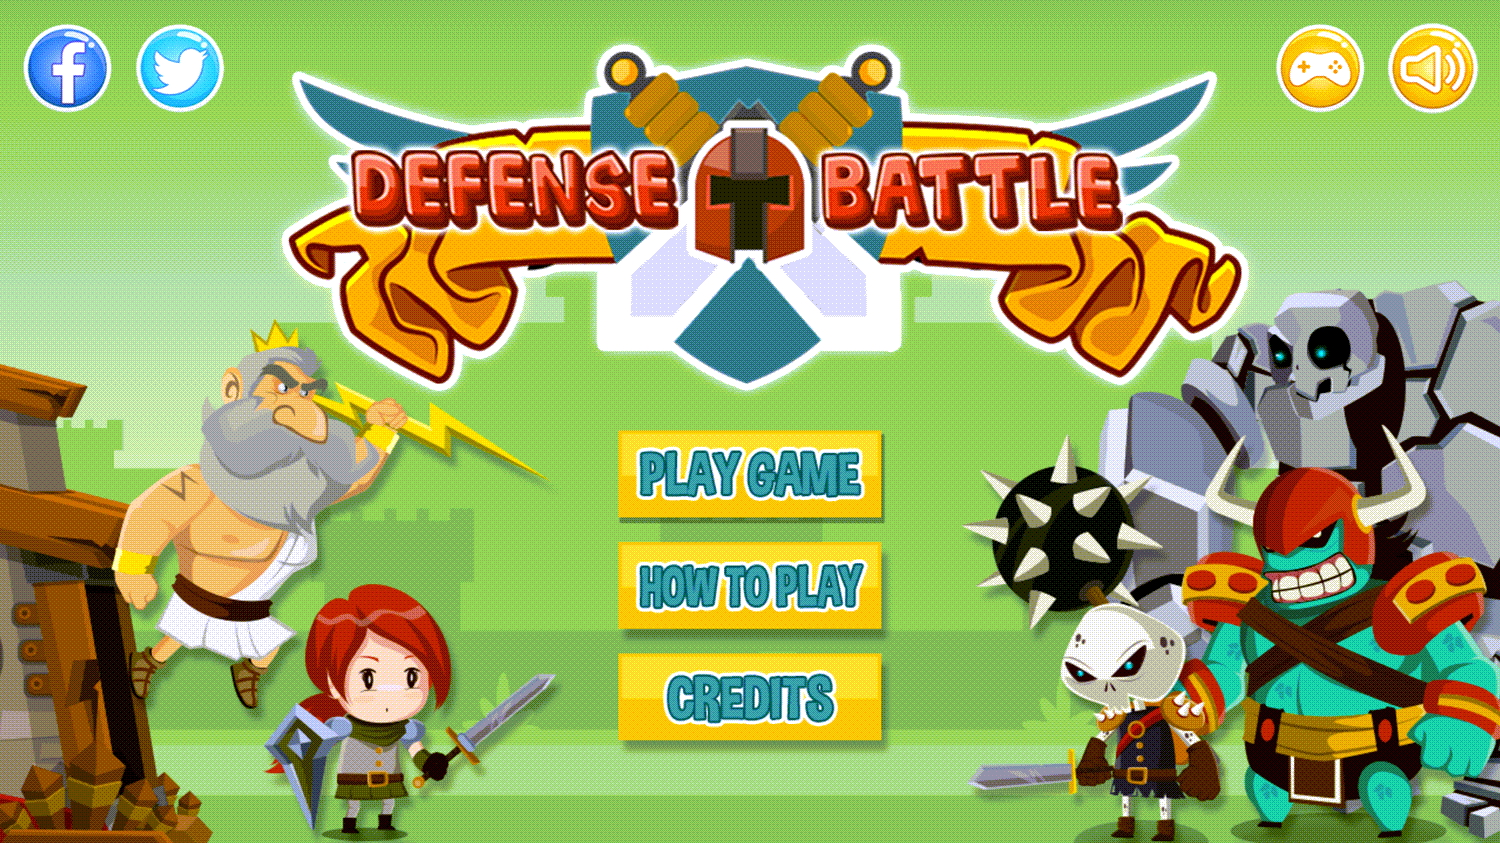 Defense Battle Welcome Screen Screenshot.